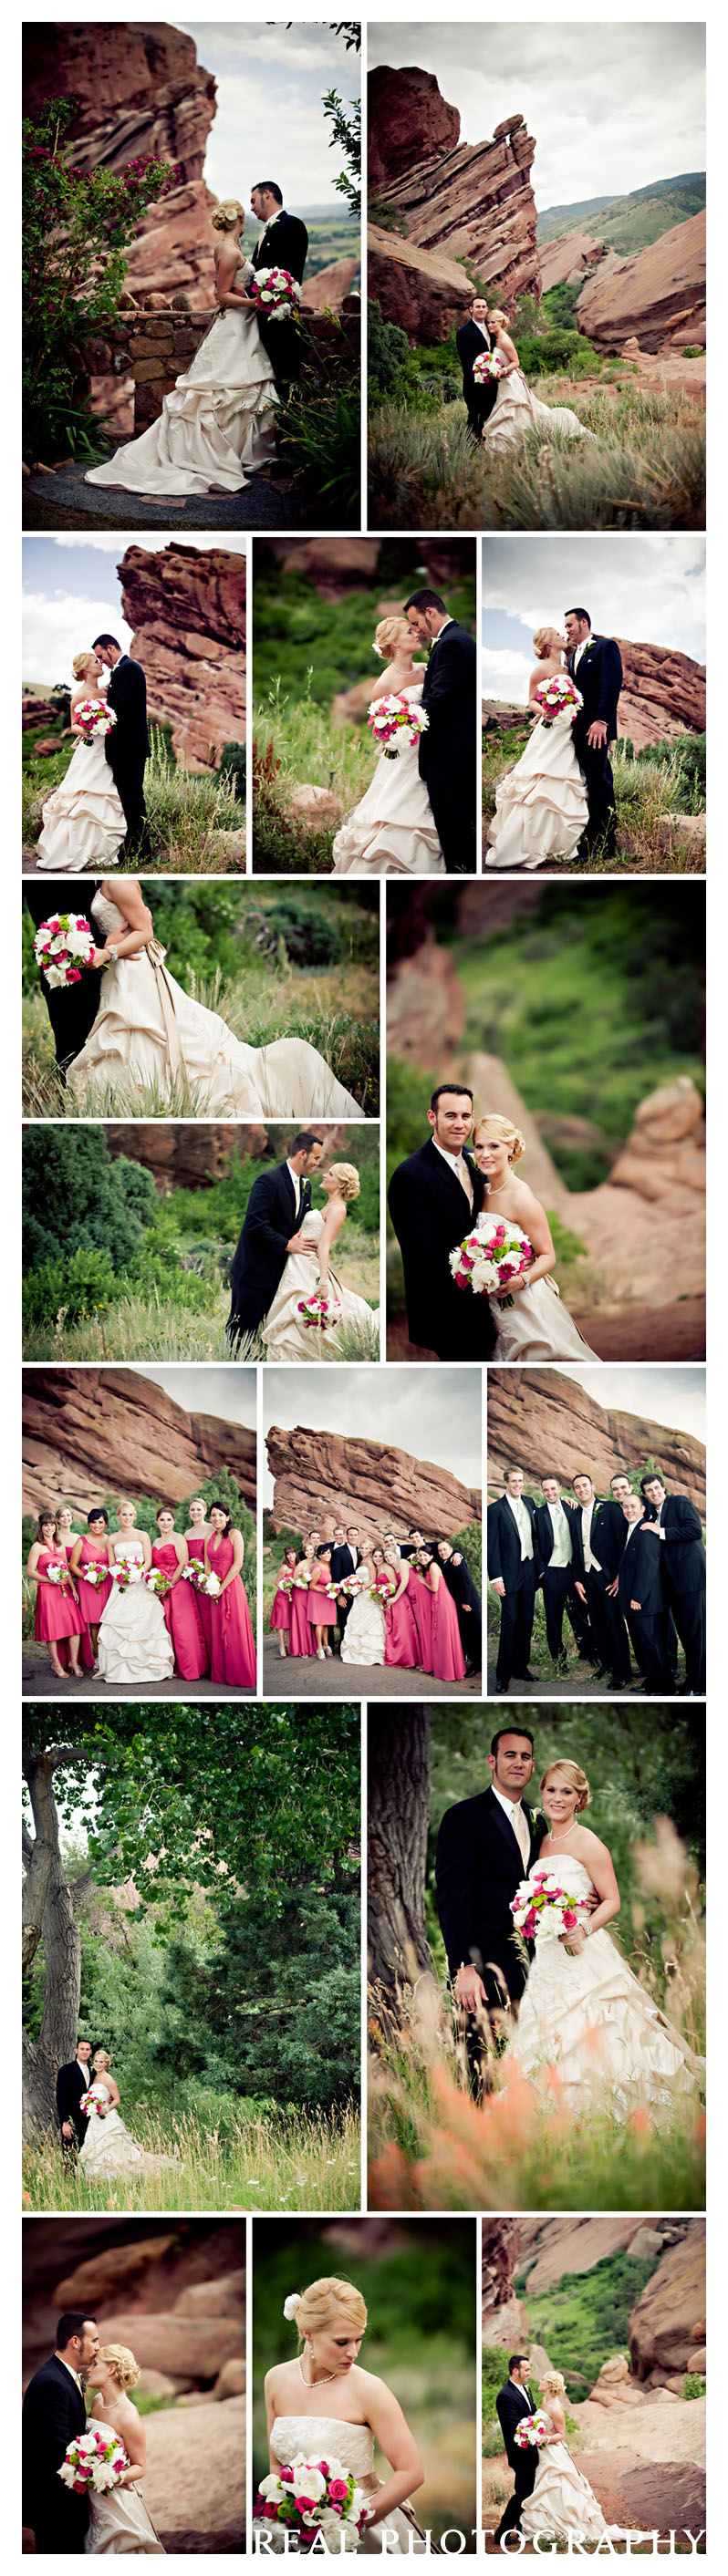 red rocks wedding ceremony photos colorado